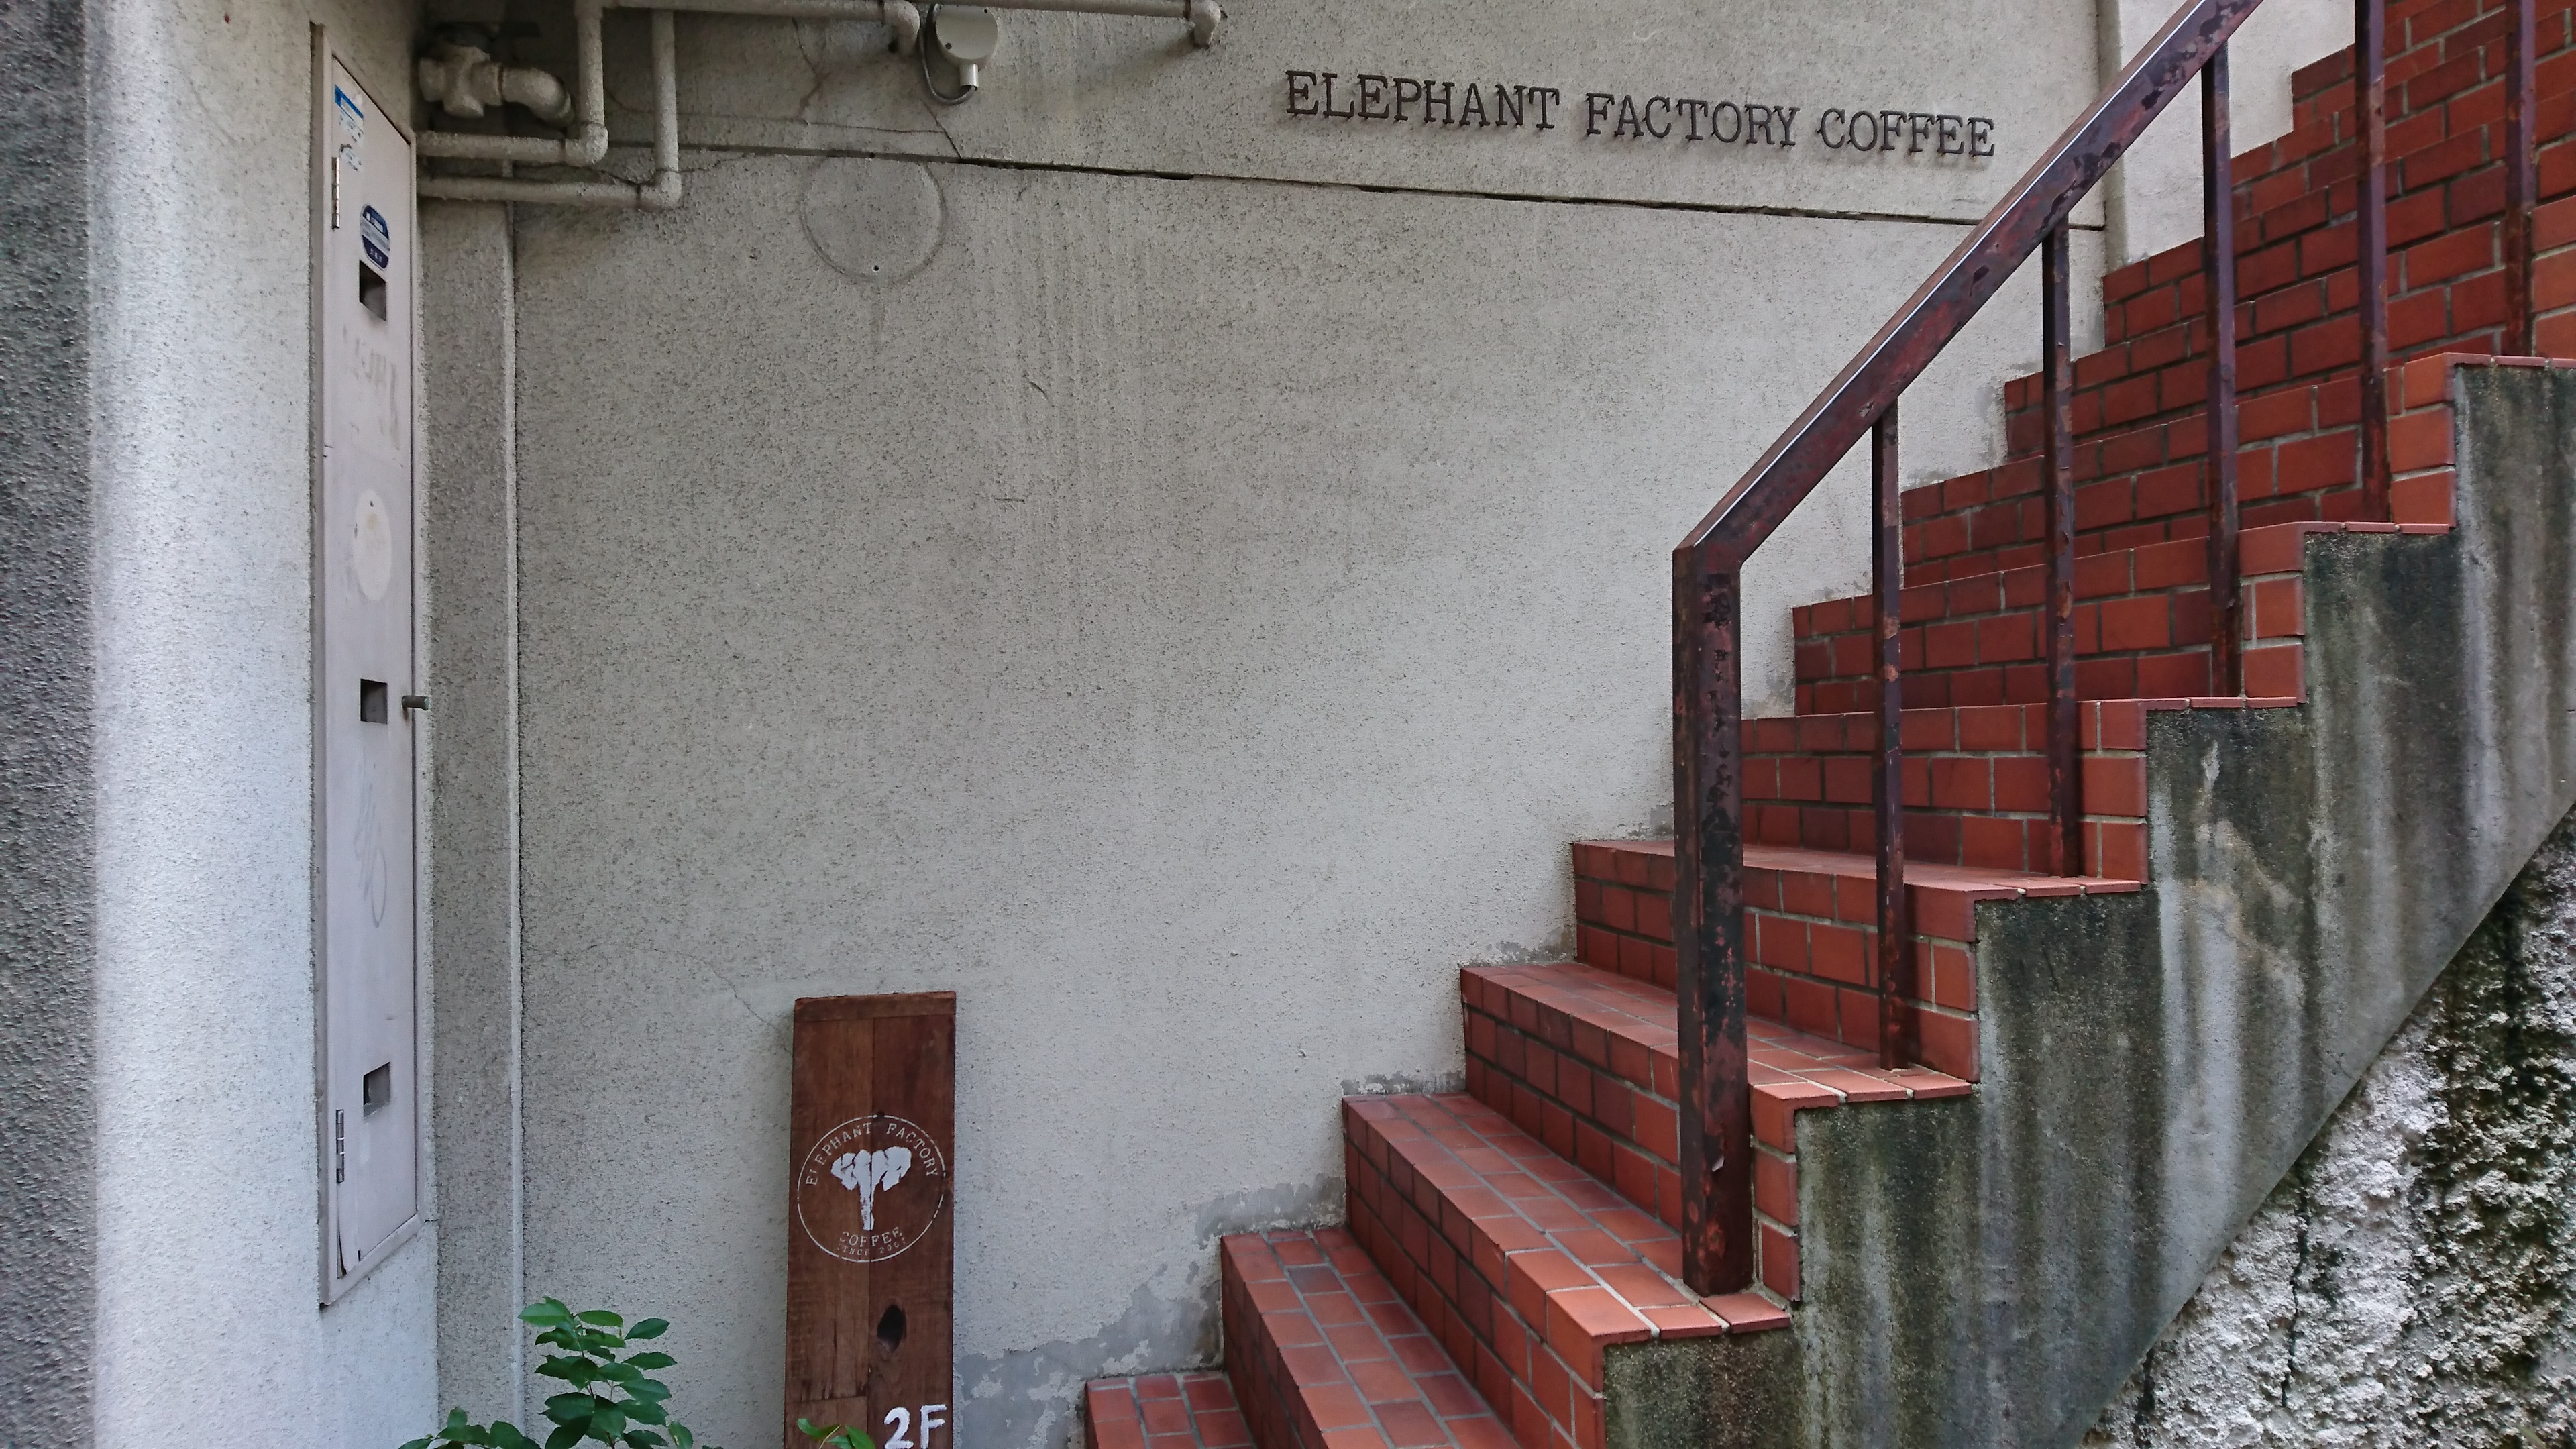 ELLEFHANT FACTORY COFFEE1